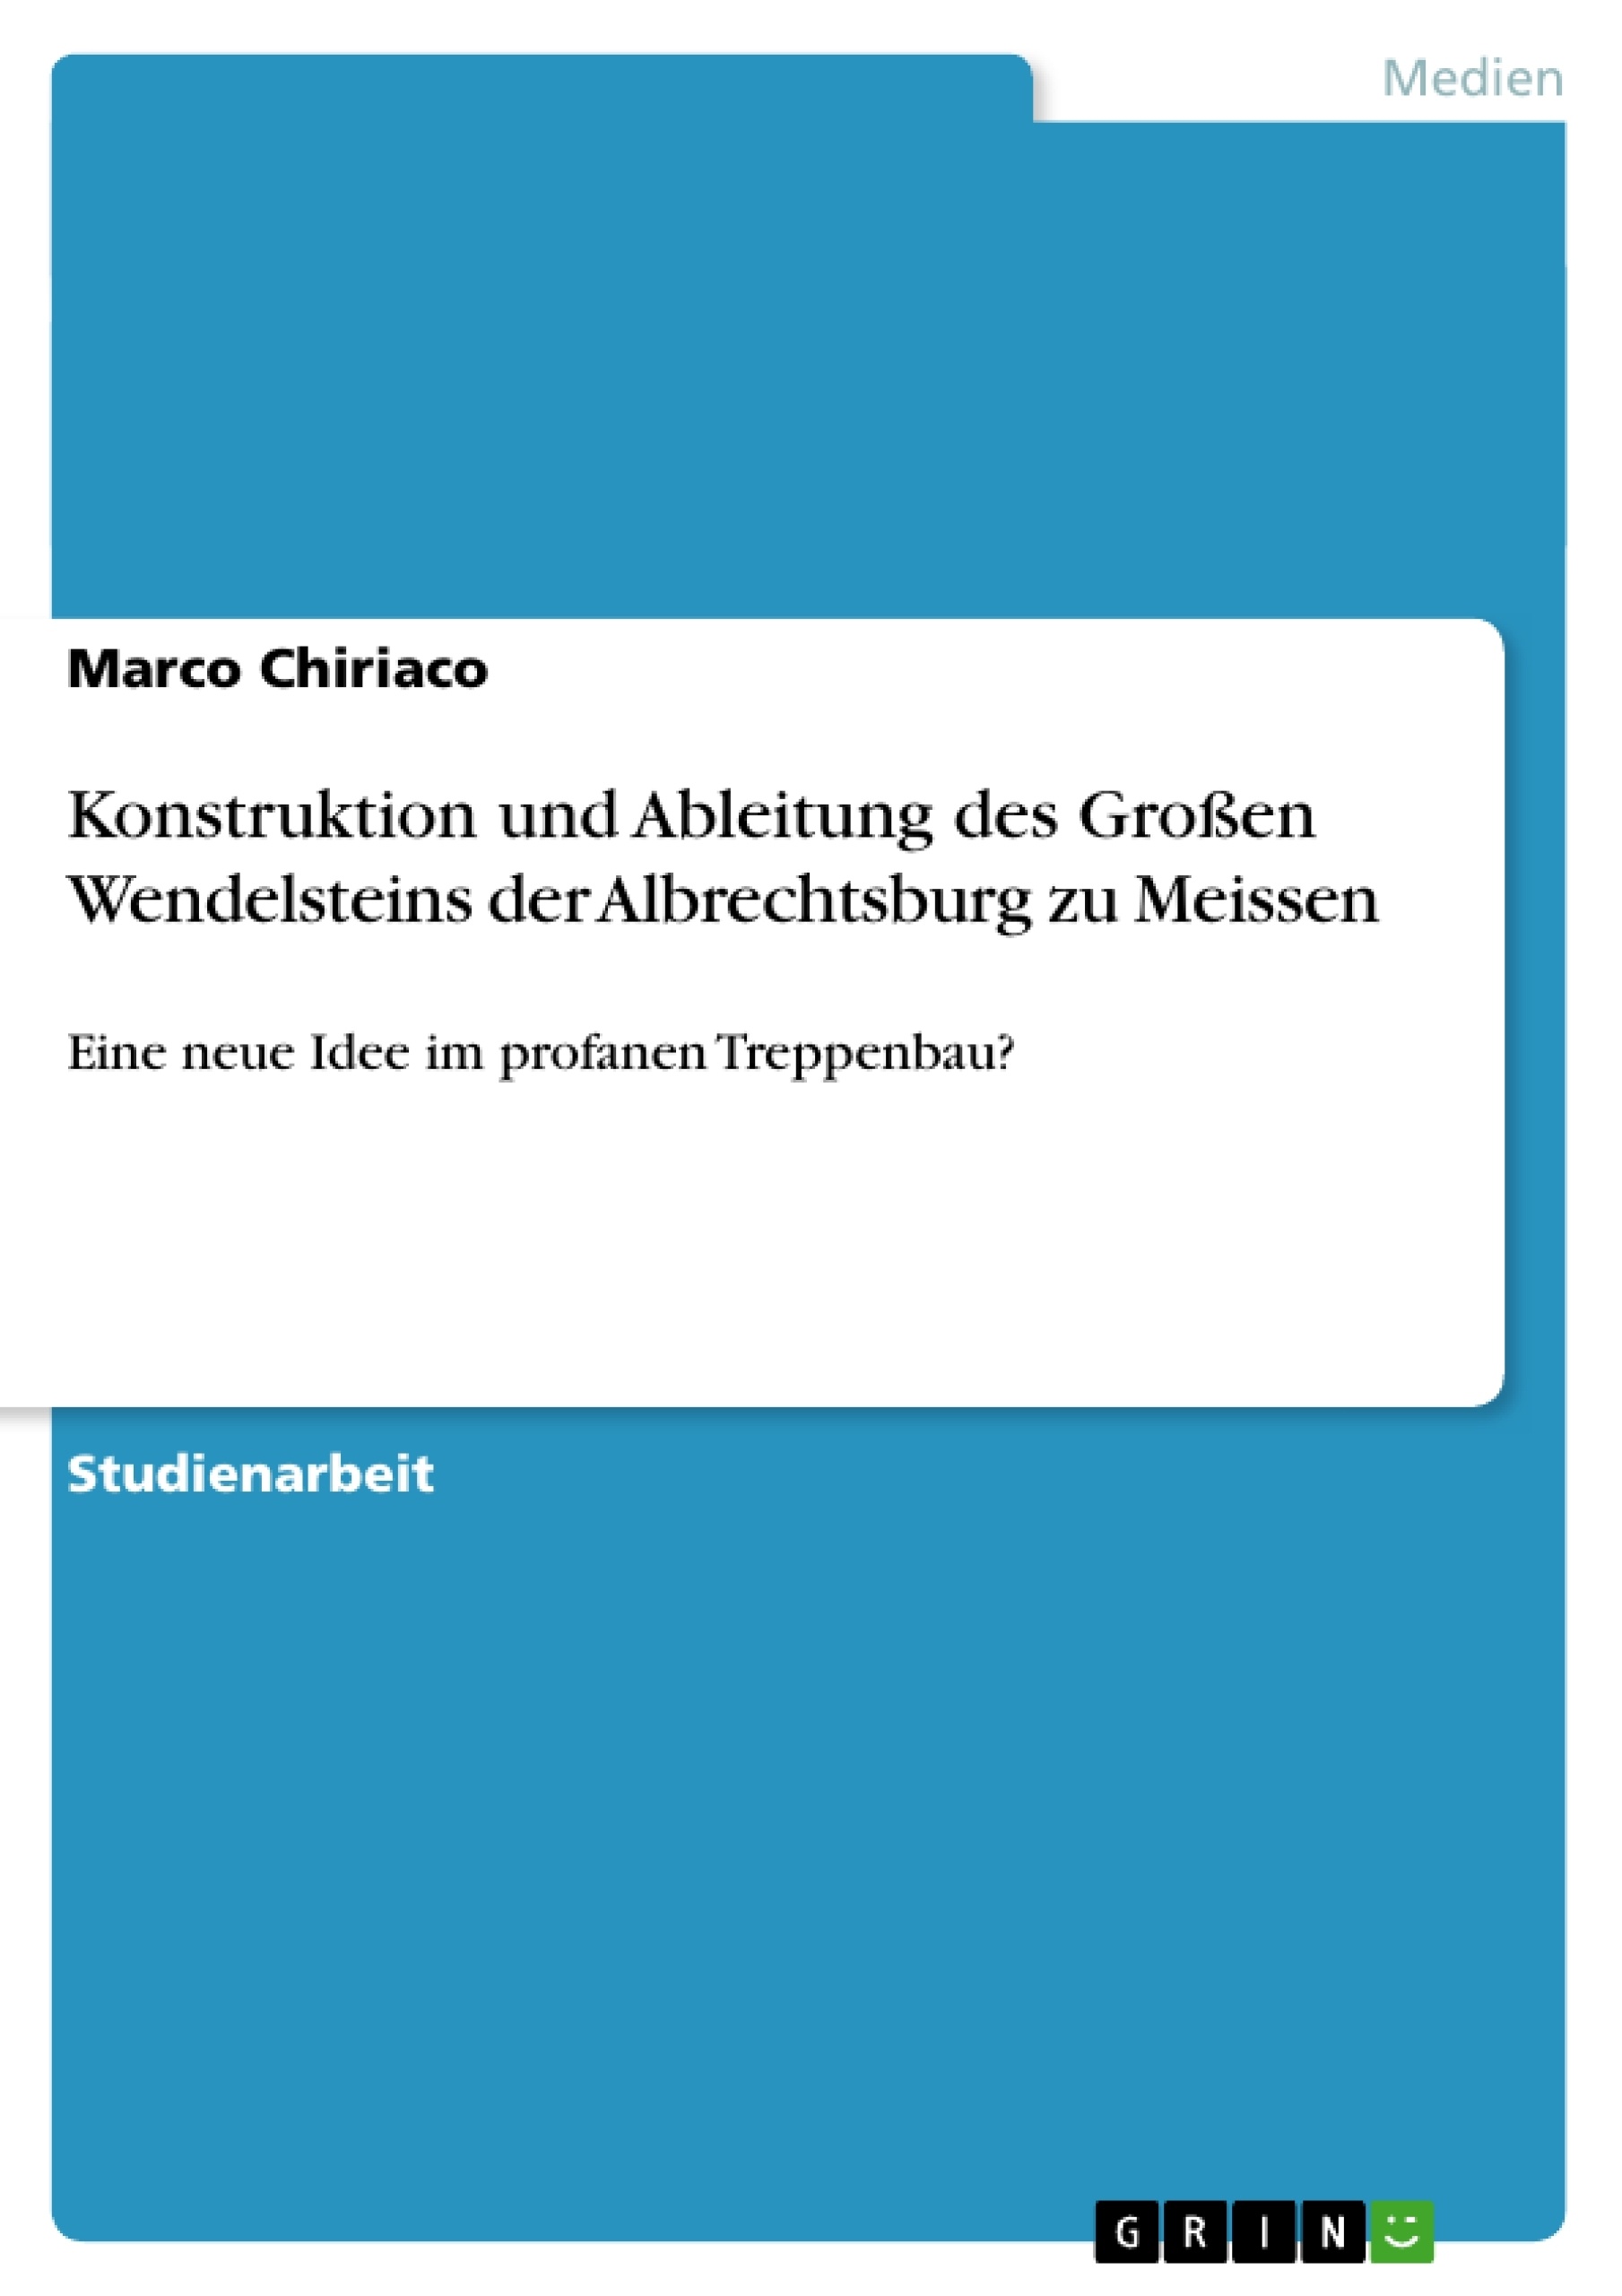 Title: Konstruktion und Ableitung des Großen Wendelsteins der Albrechtsburg zu Meissen